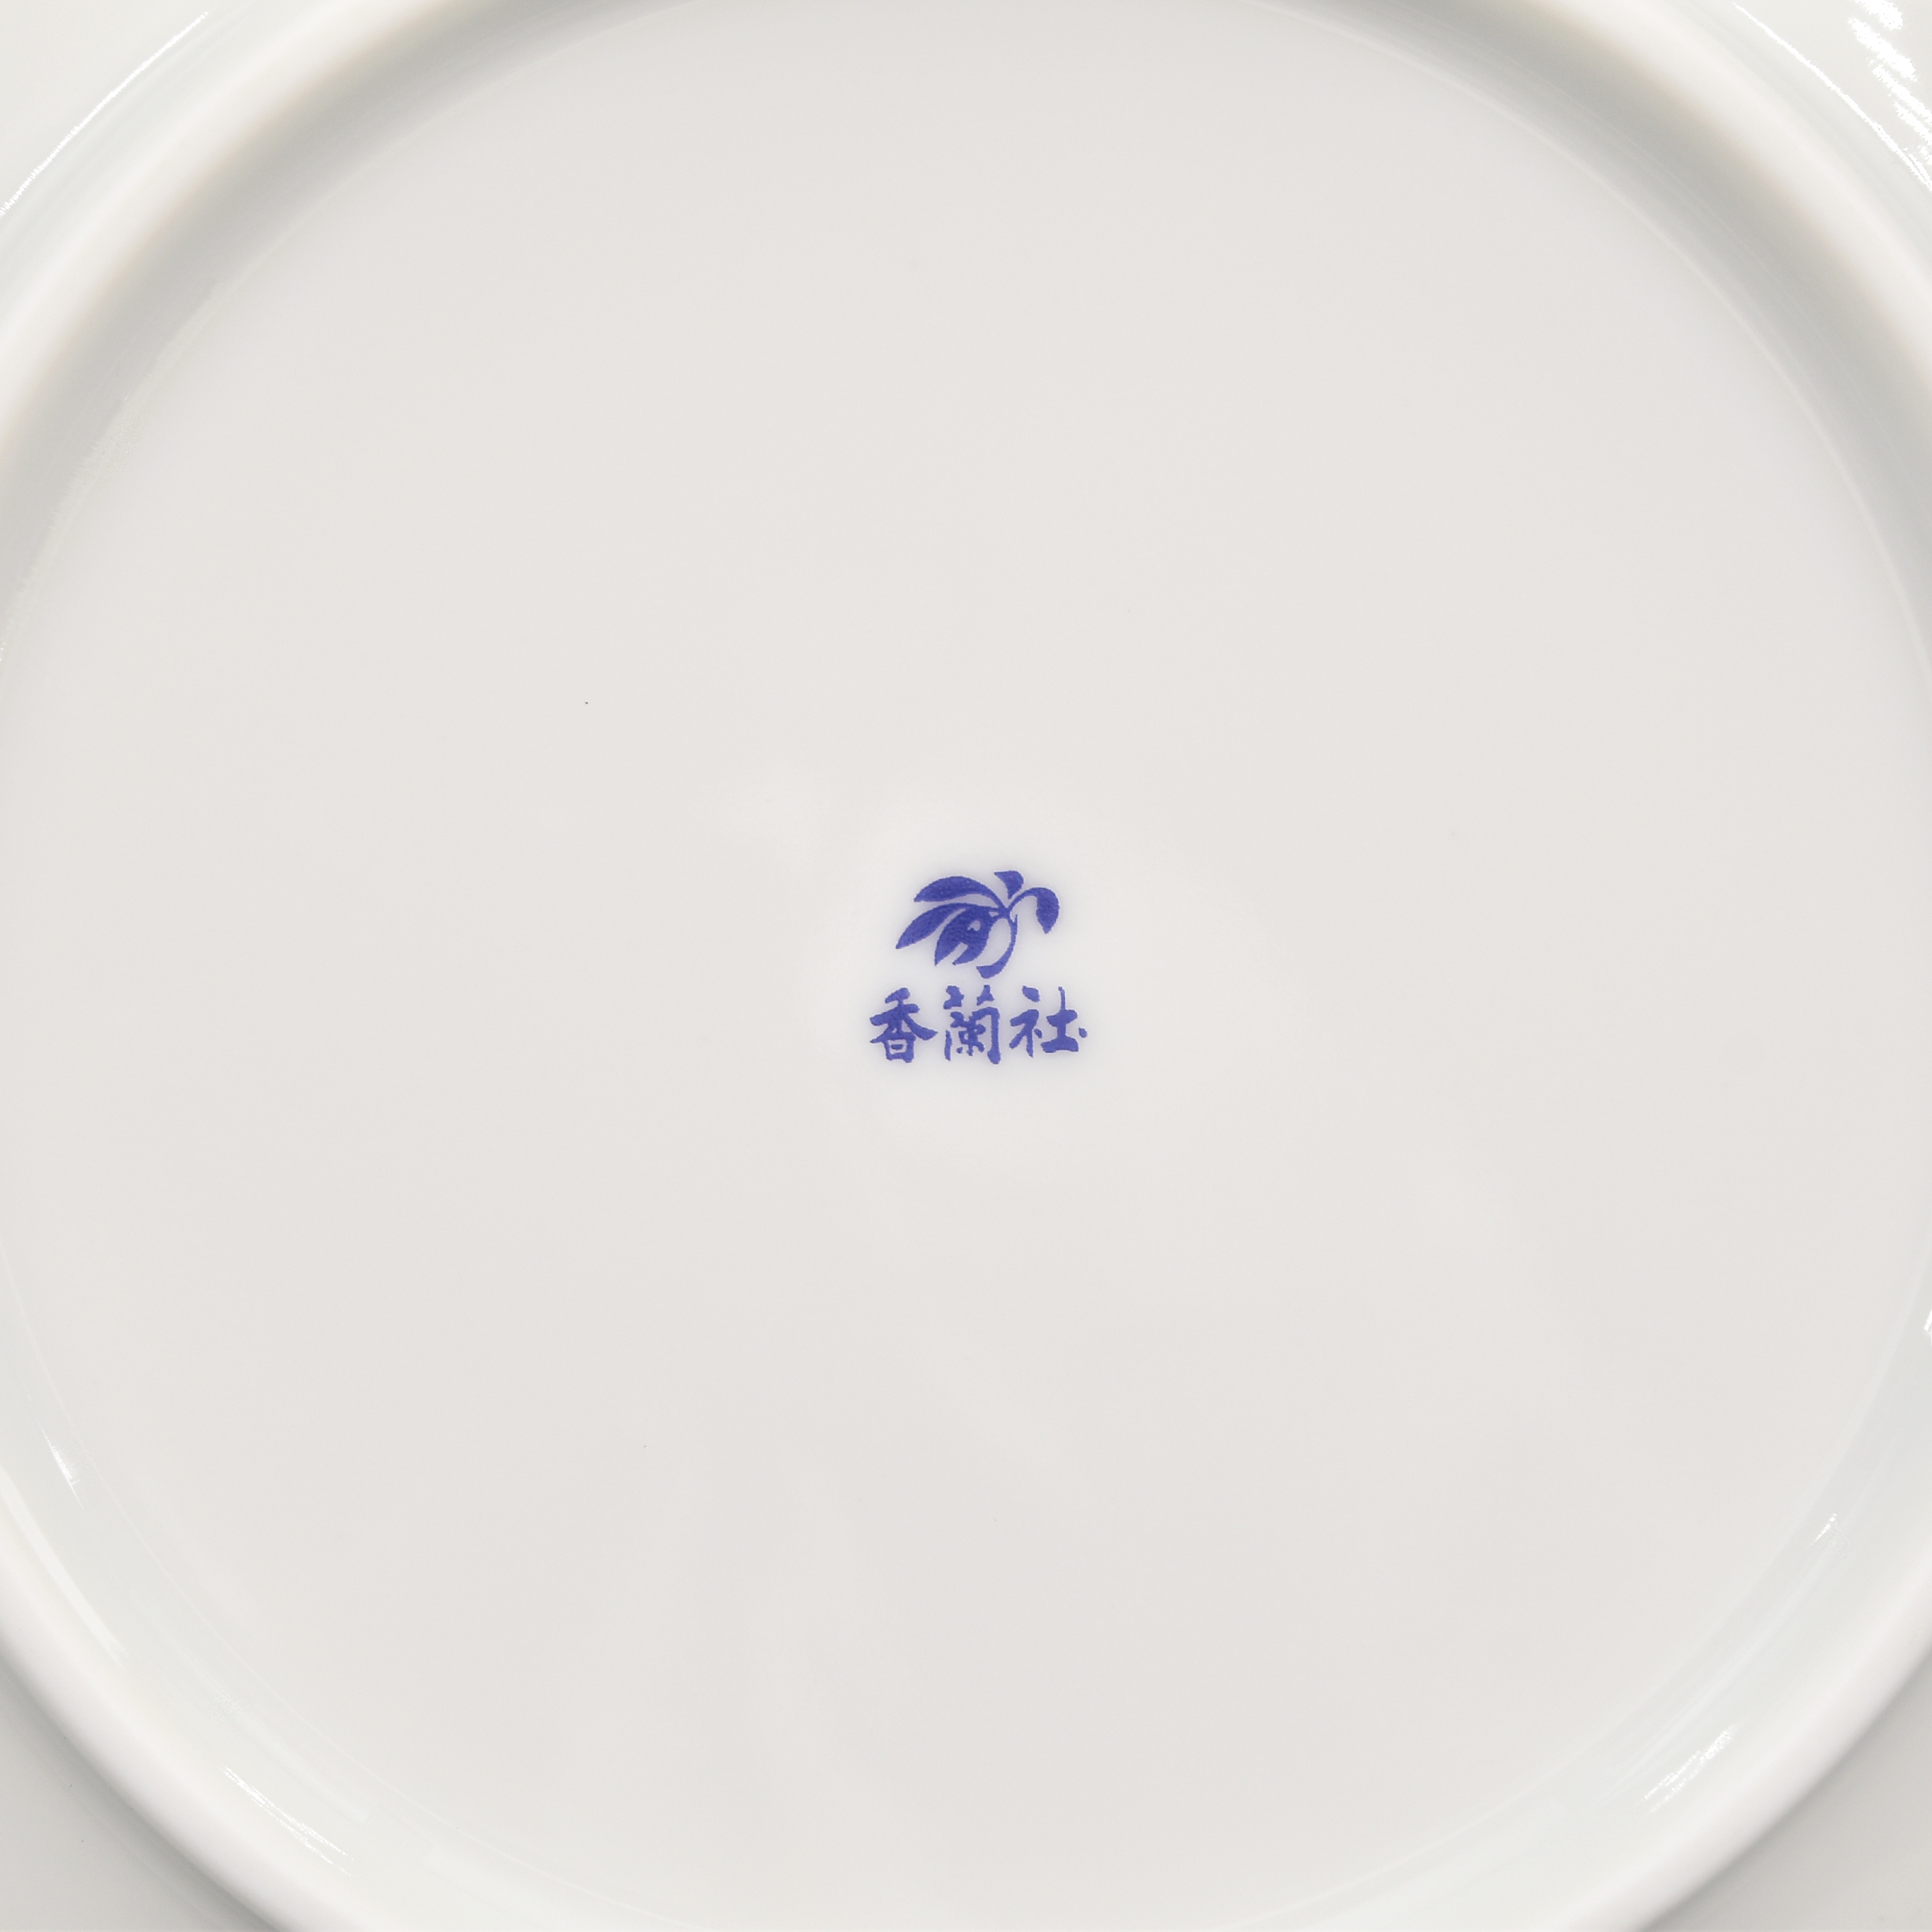 お皿の裏側には香蘭社の印があります。